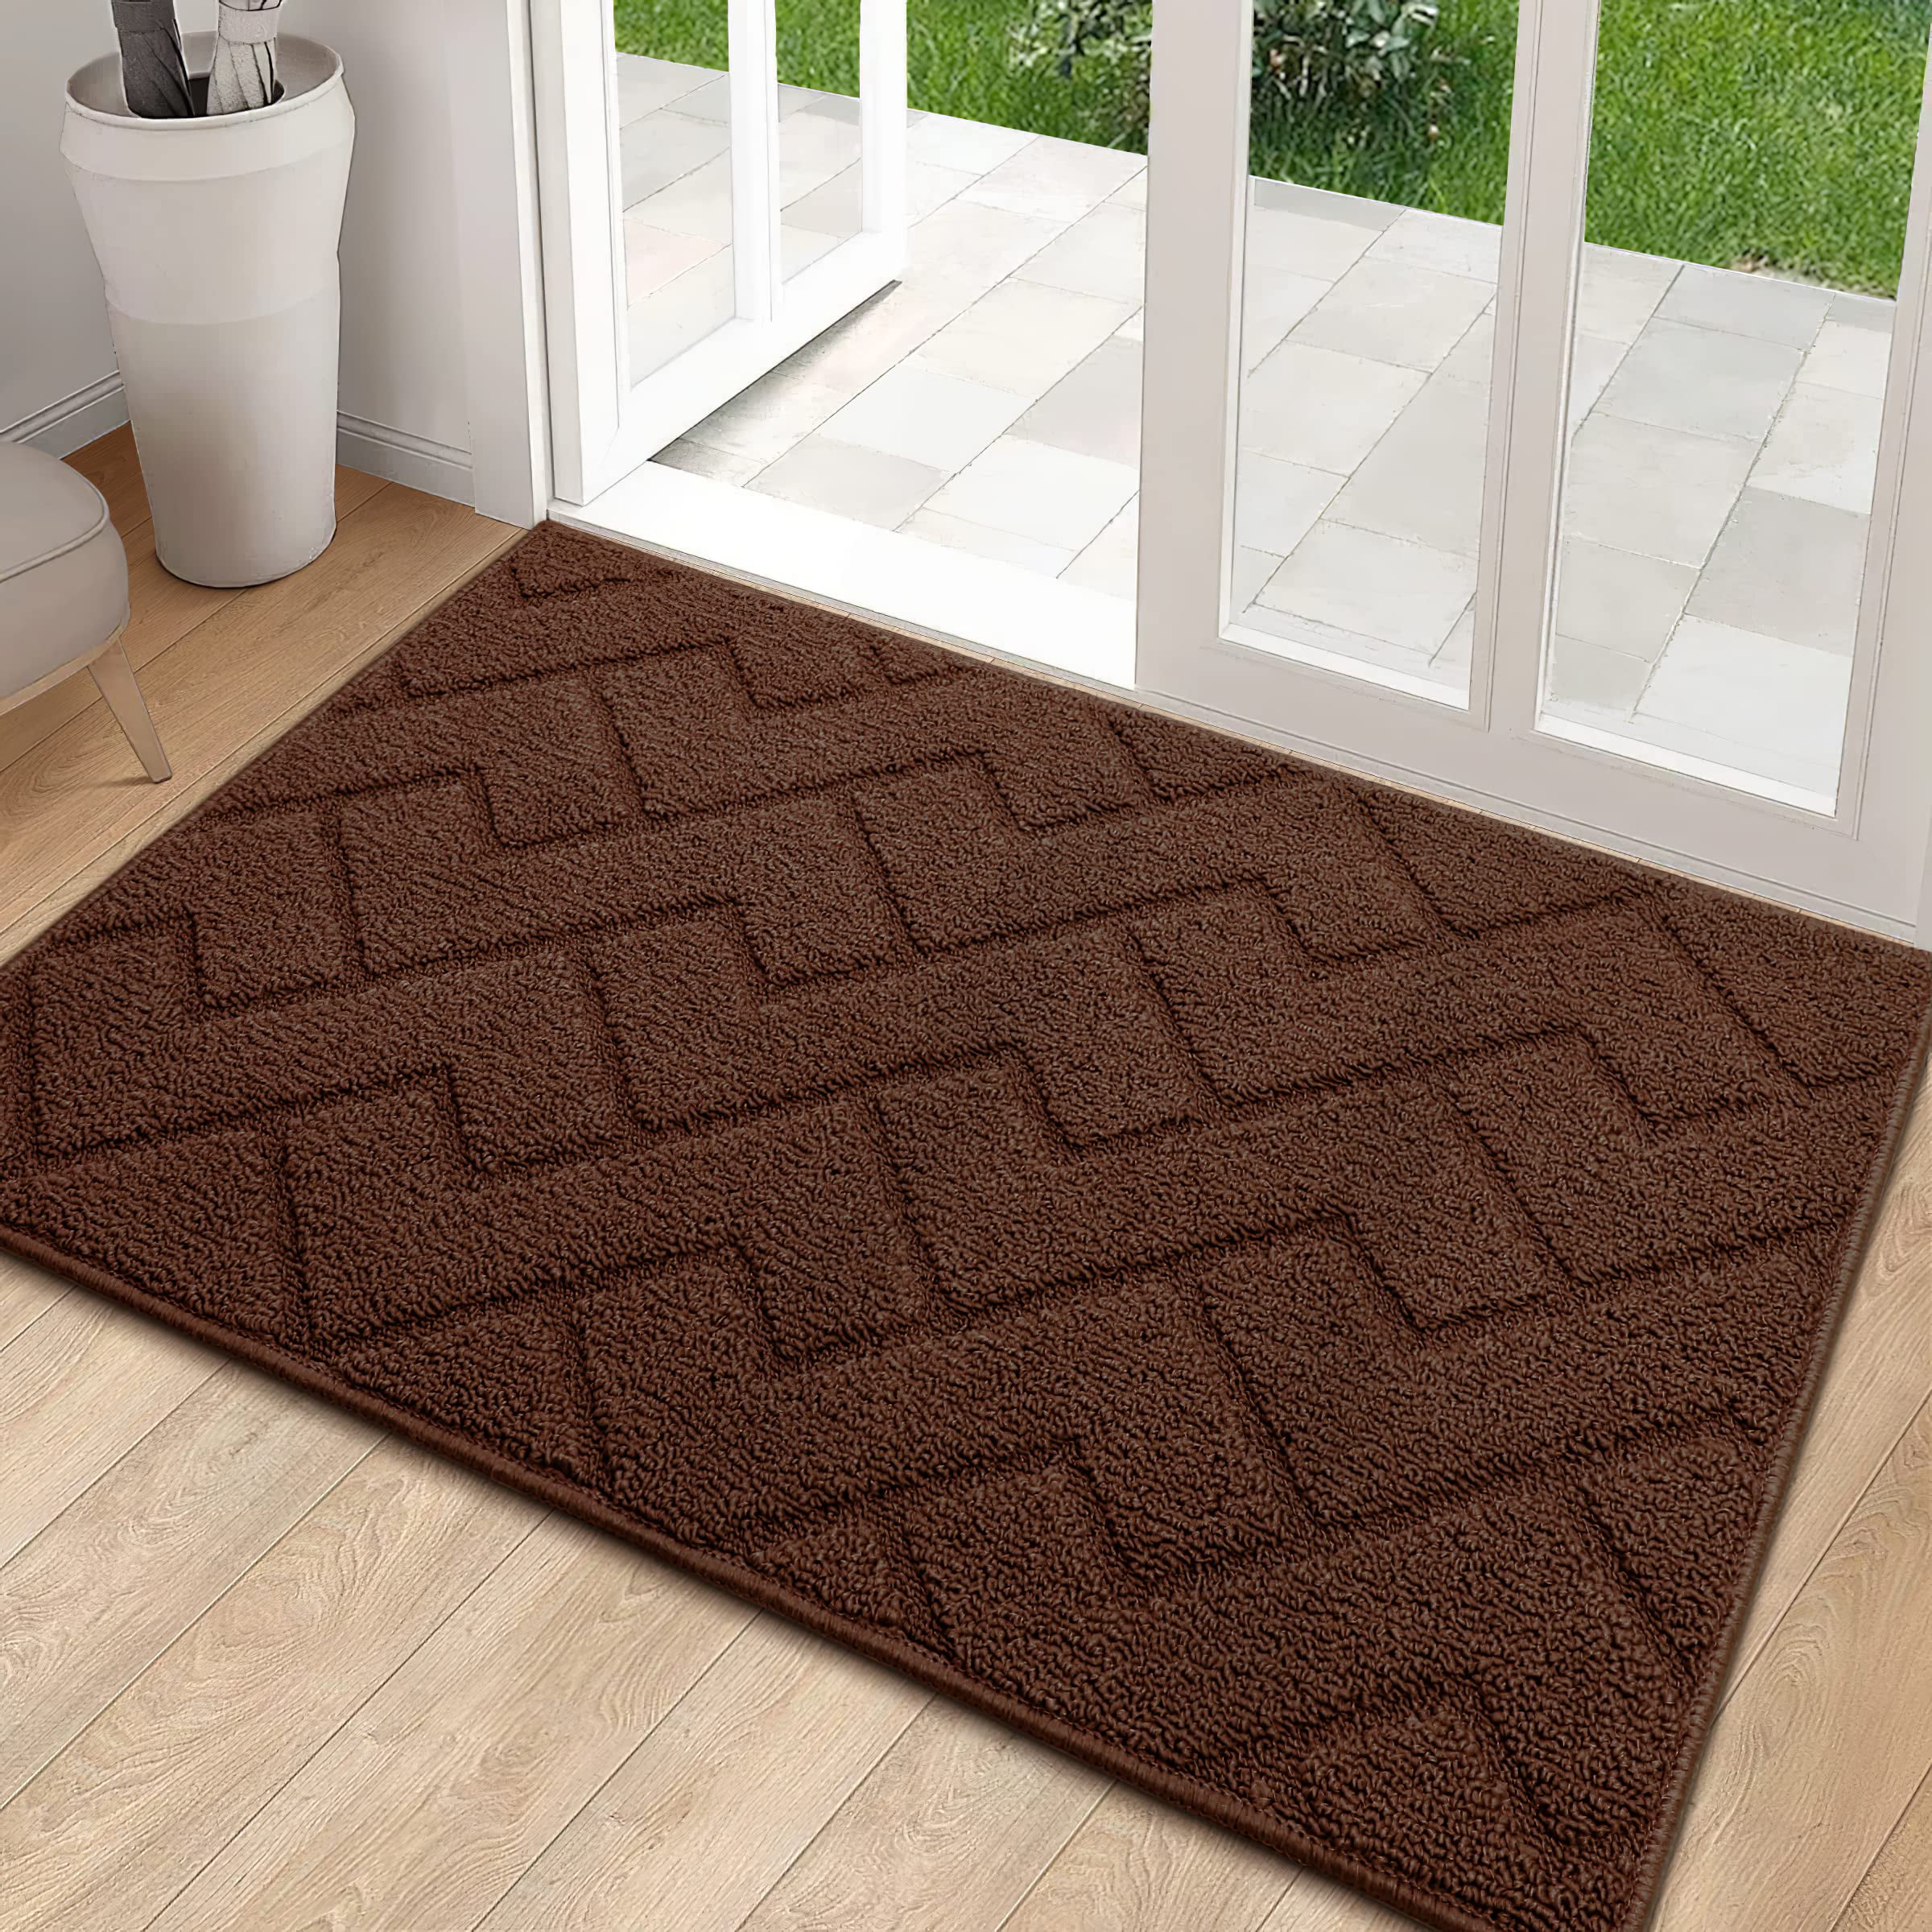 hicorfe Door Mat Indoor Doormat, 24x35 Front Back Door Rubber Backing,  Low-Profile Entrance Rugs, Absorbent Resist Dirt Doormats Inside Doormat  for